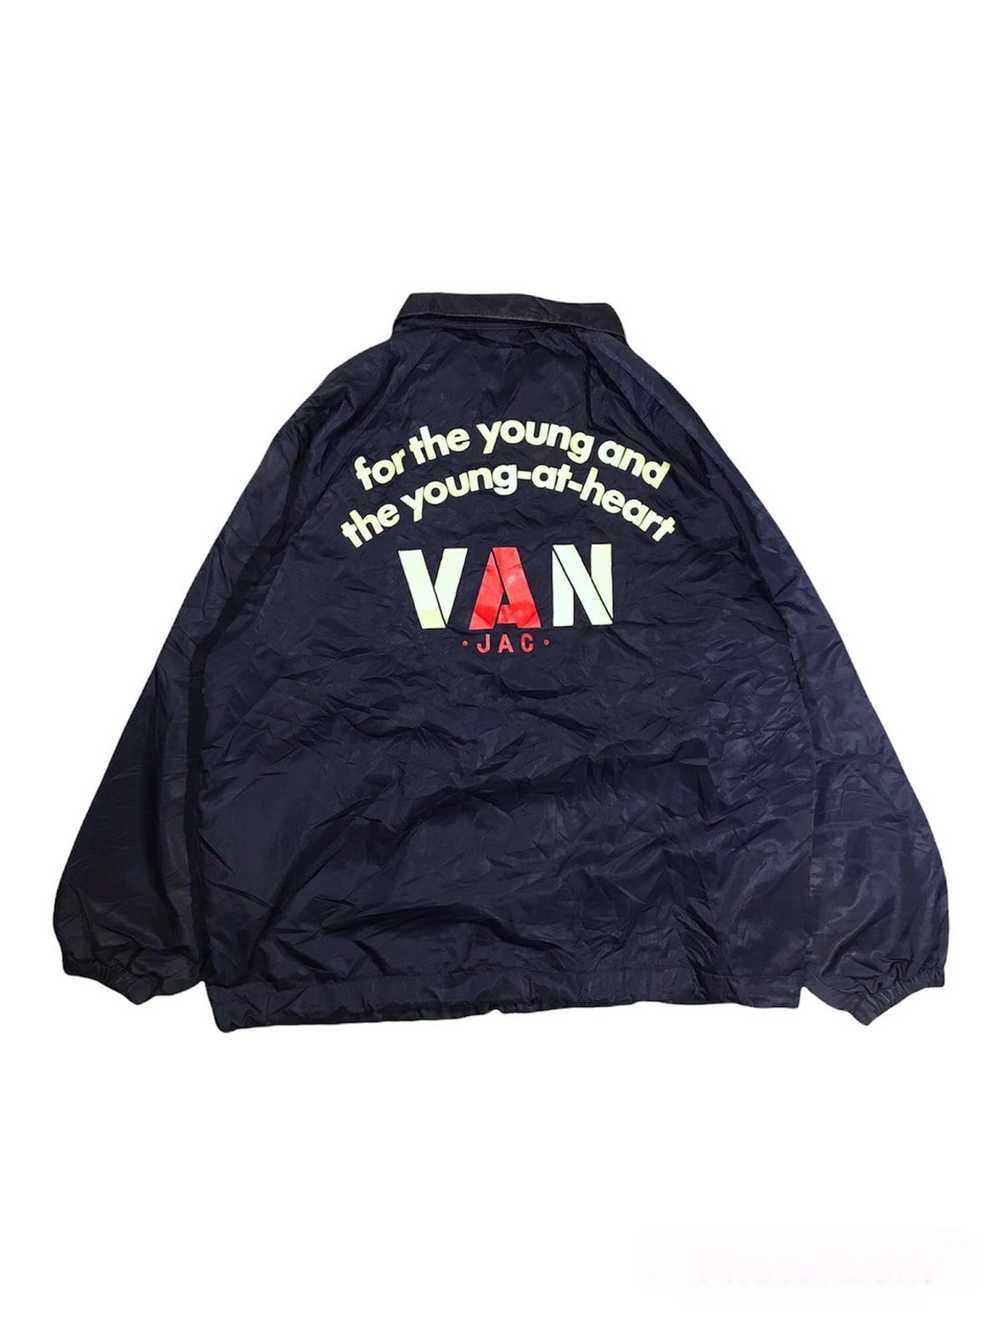 Van × Vintage Vintage Van Jac jacket - image 1